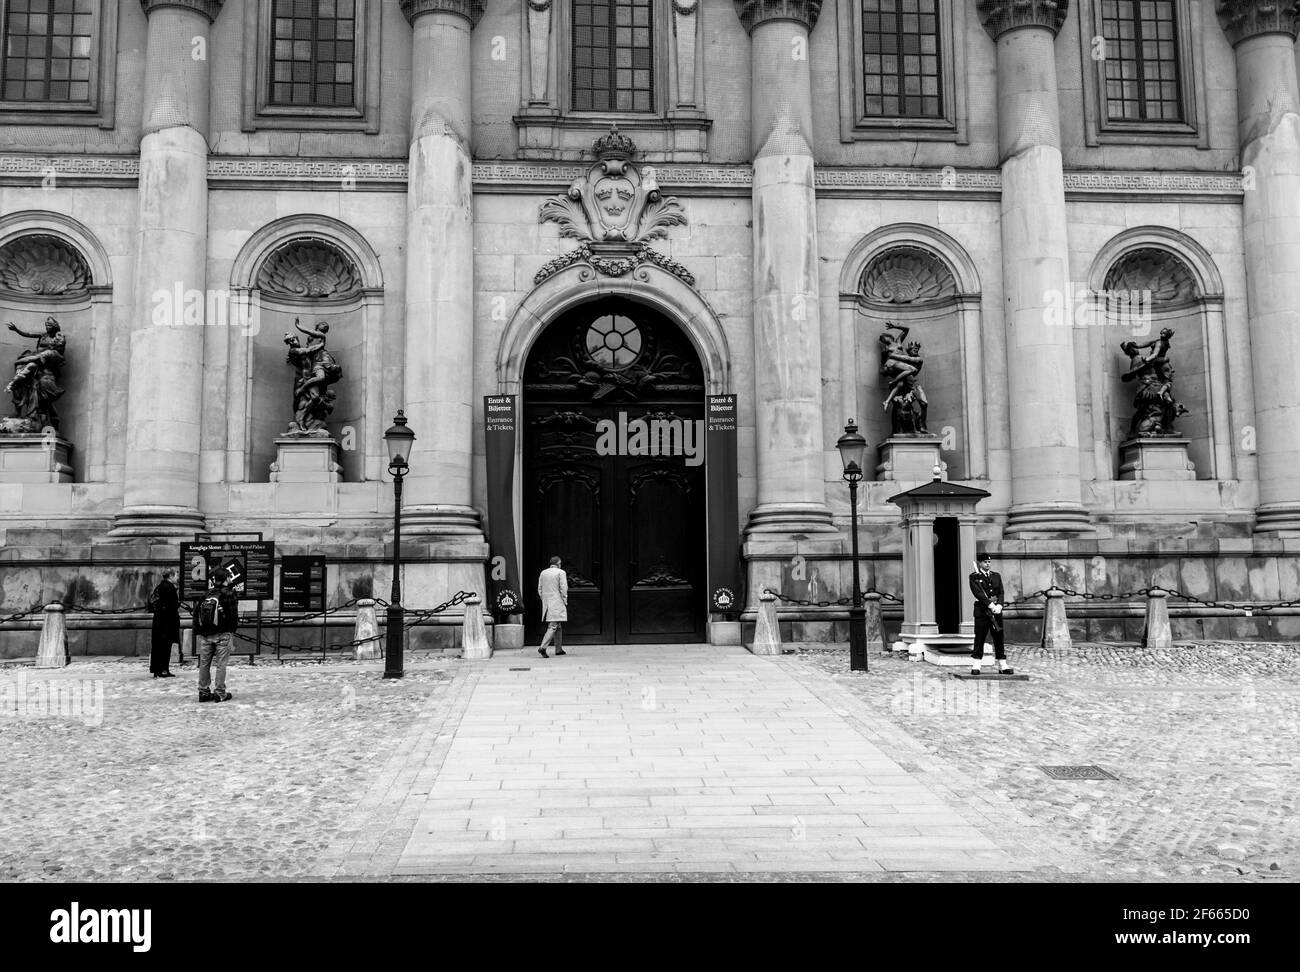 Wachen vor einer großen dunklen Tür des Königlichen Palastes (Kungliga Slottet) / Stockholms-Palasts (Stockholms Slott), Stockholm, Schweden. S/W Stockfoto